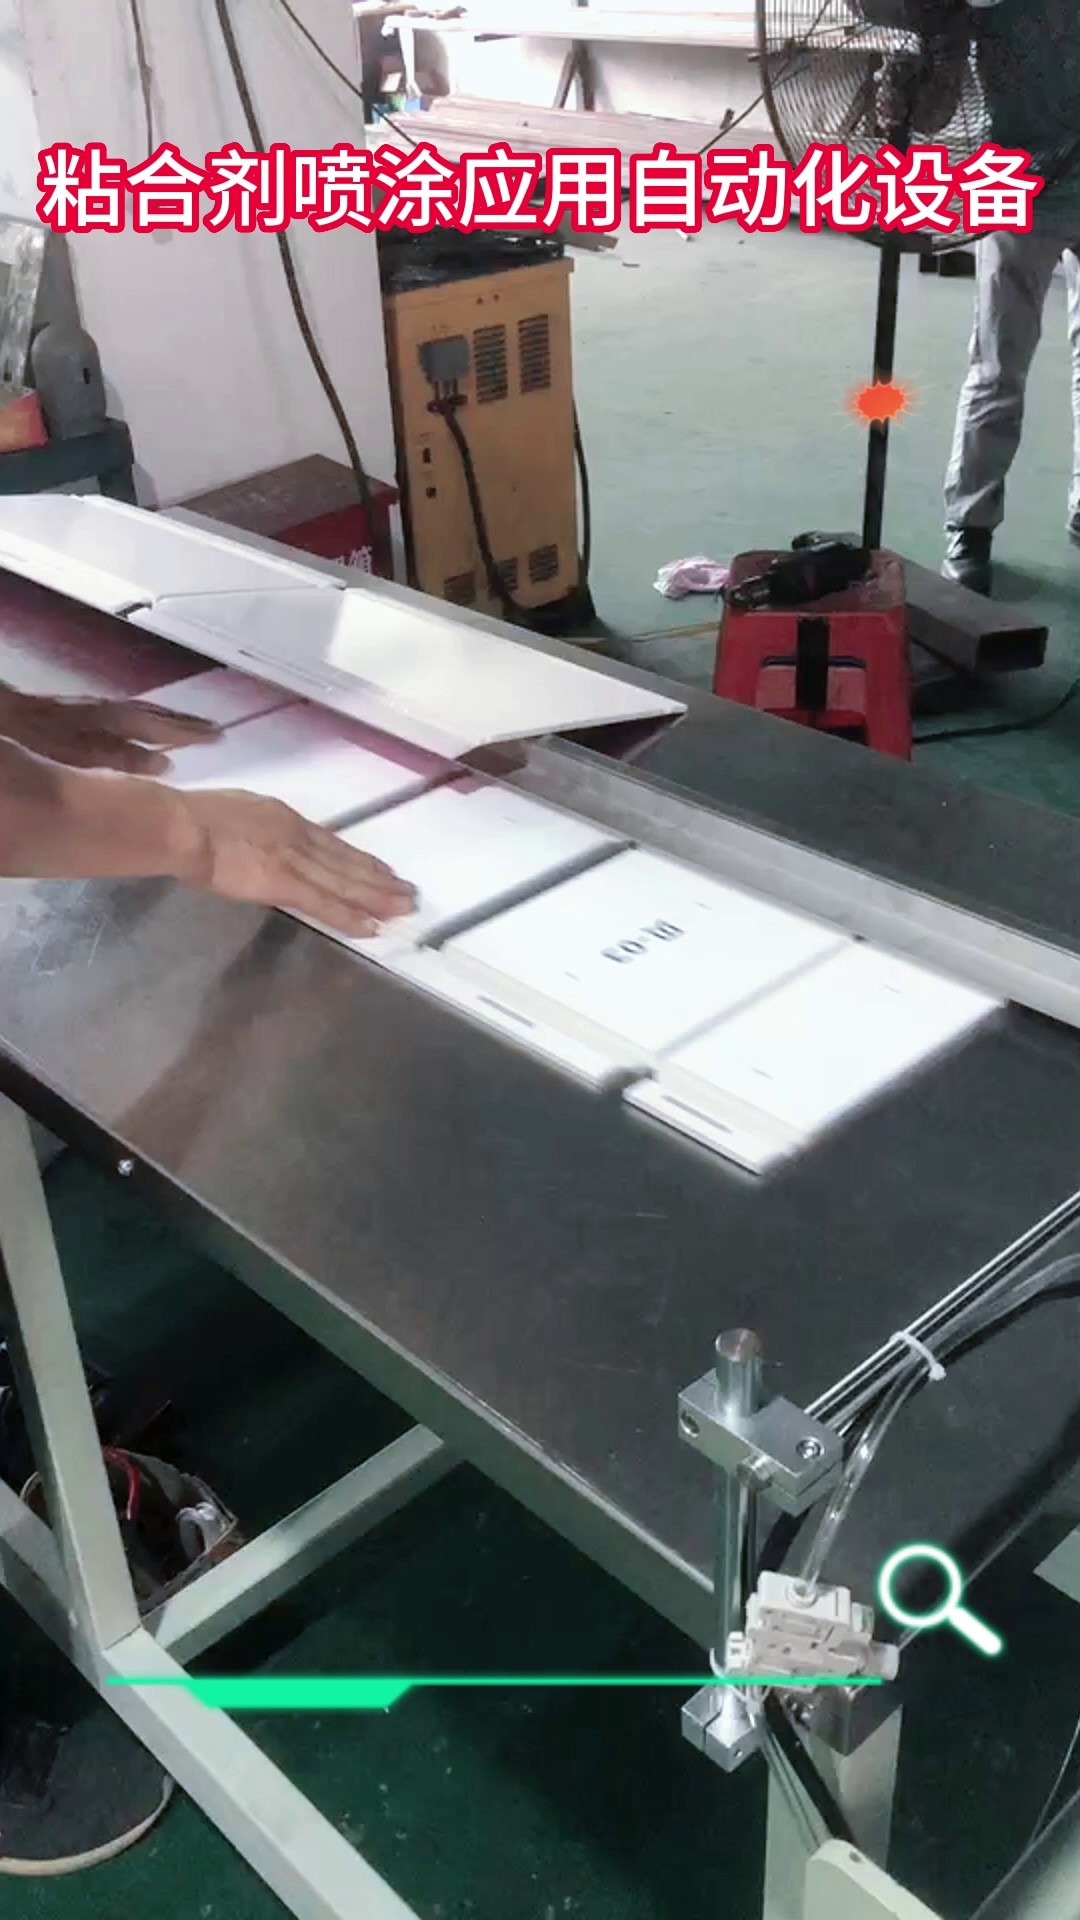 重庆厂家直销贺卡自动镶珠机,纸卡折边涂胶机